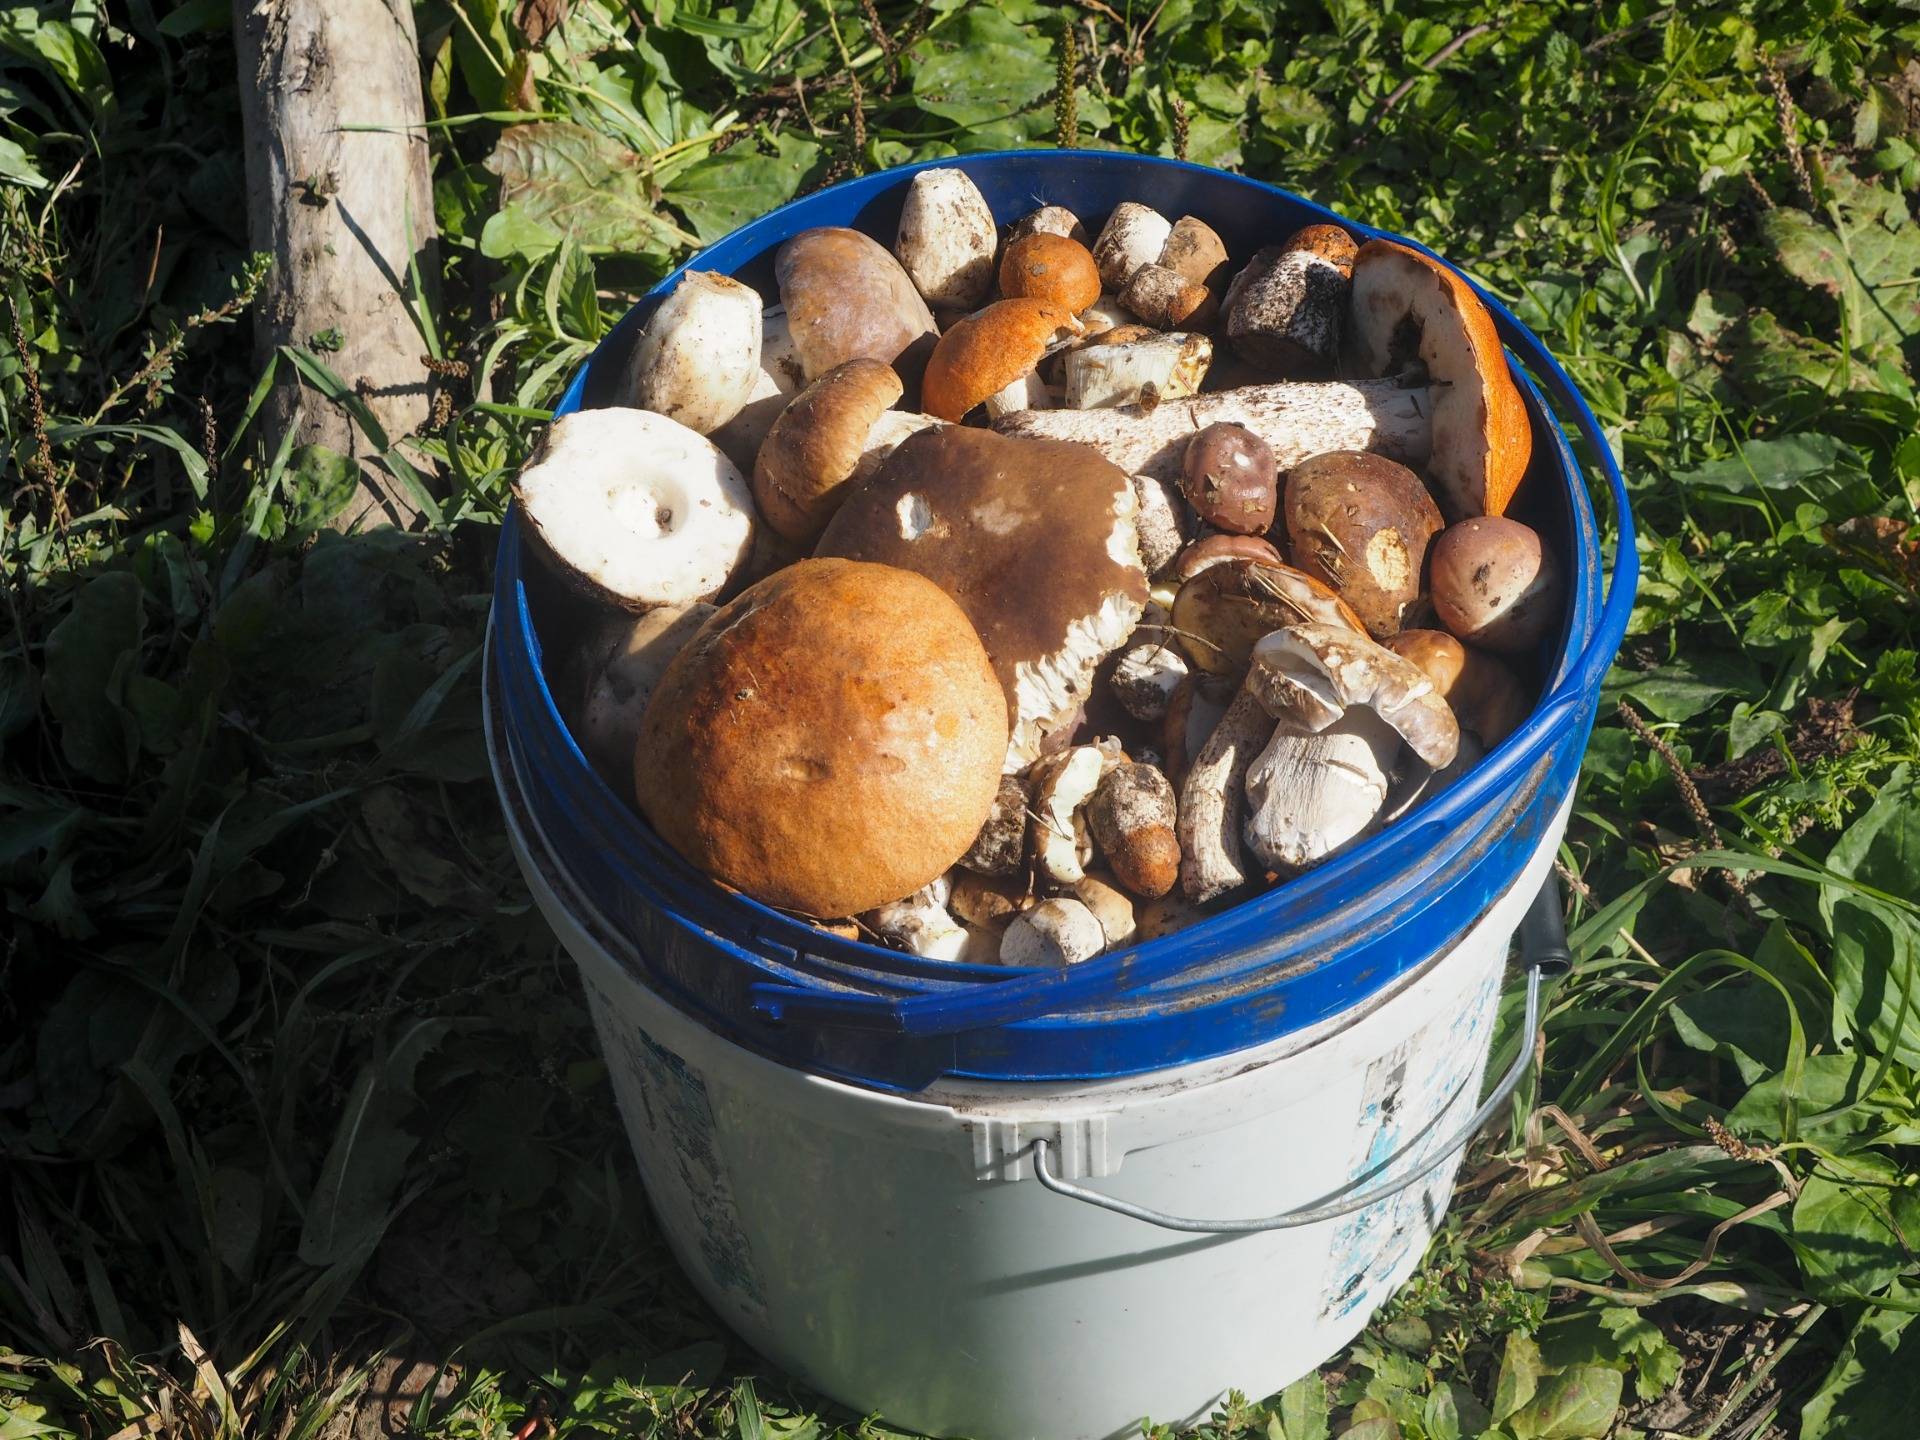 Full bucket of mushrooms